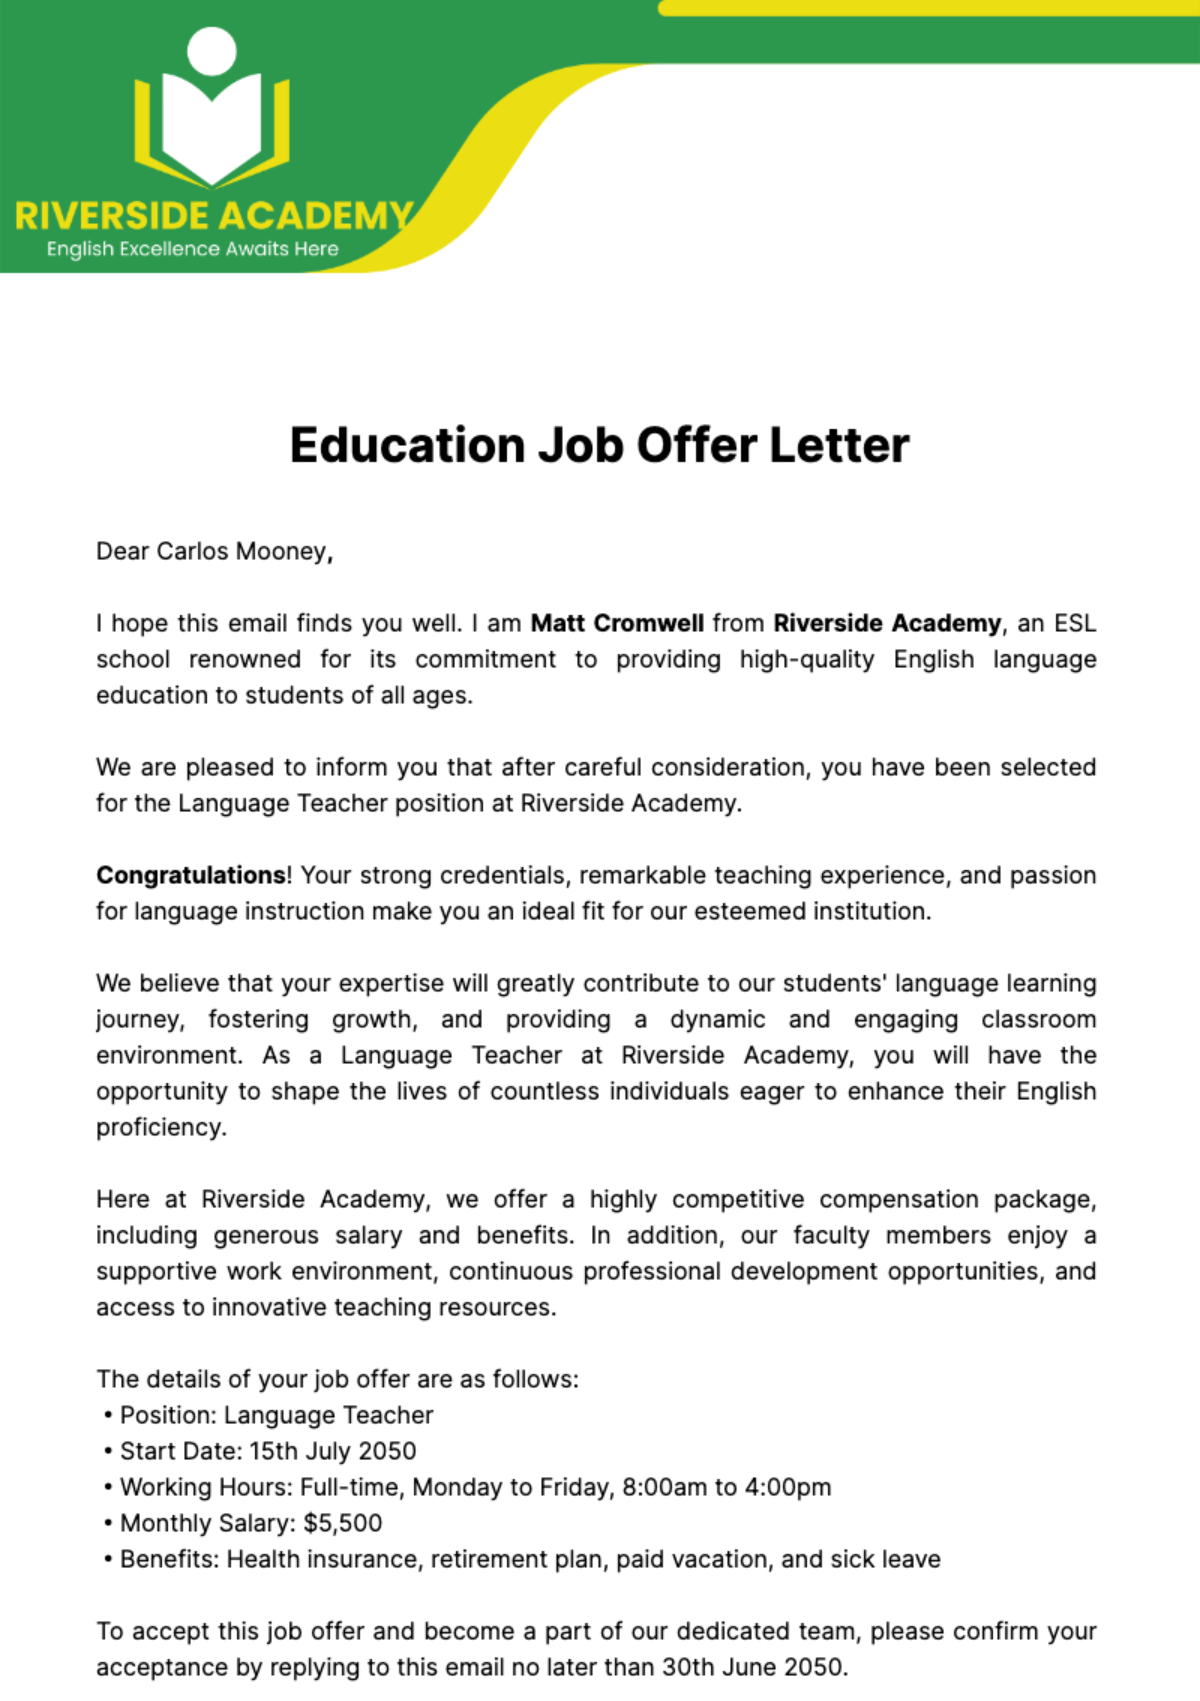 Education Job Offer Letter  Template